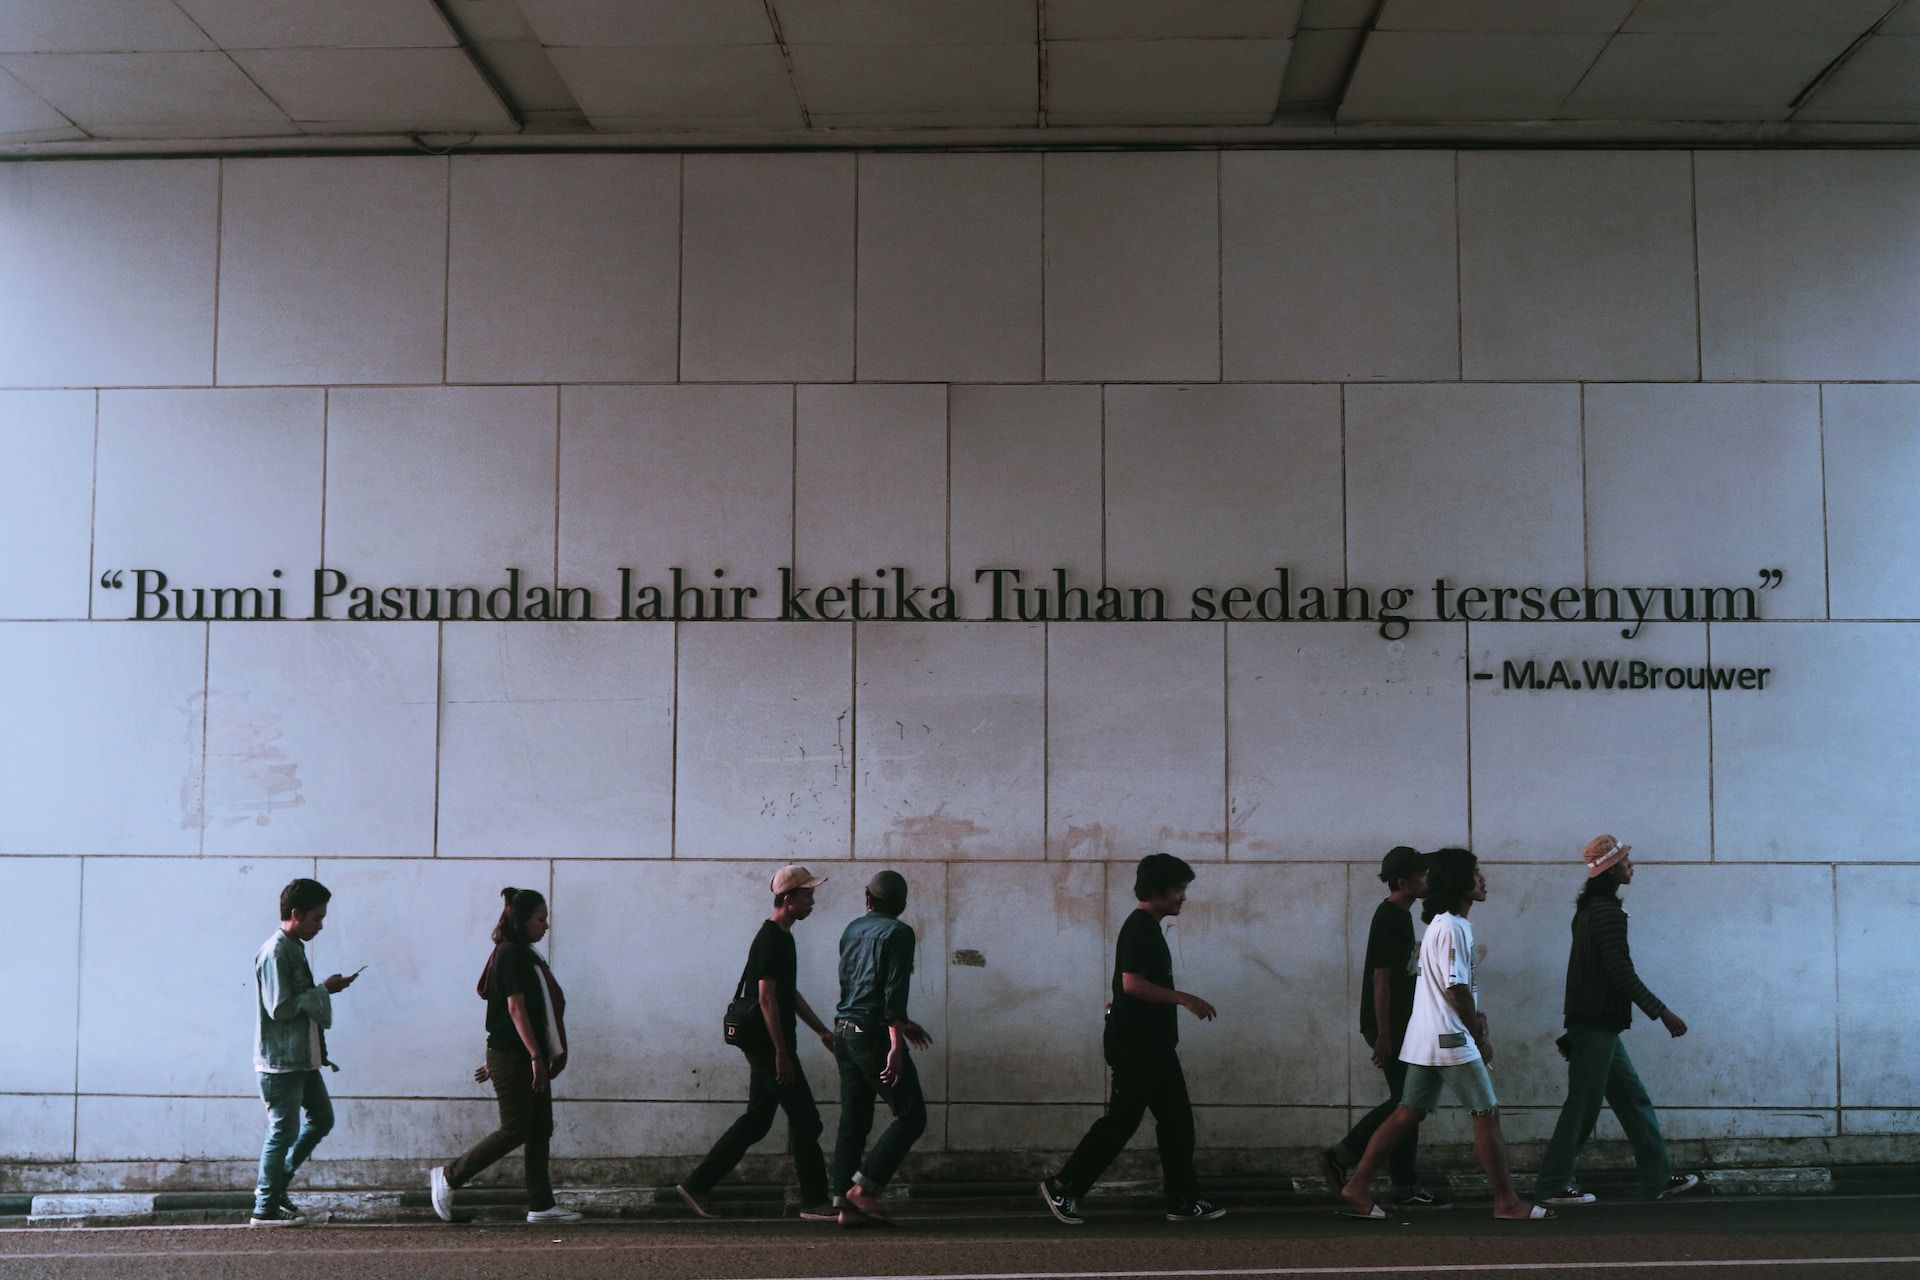 Salah satu keunikan Kota Bandung berupa spot foto dengan tulisan yang puitis.